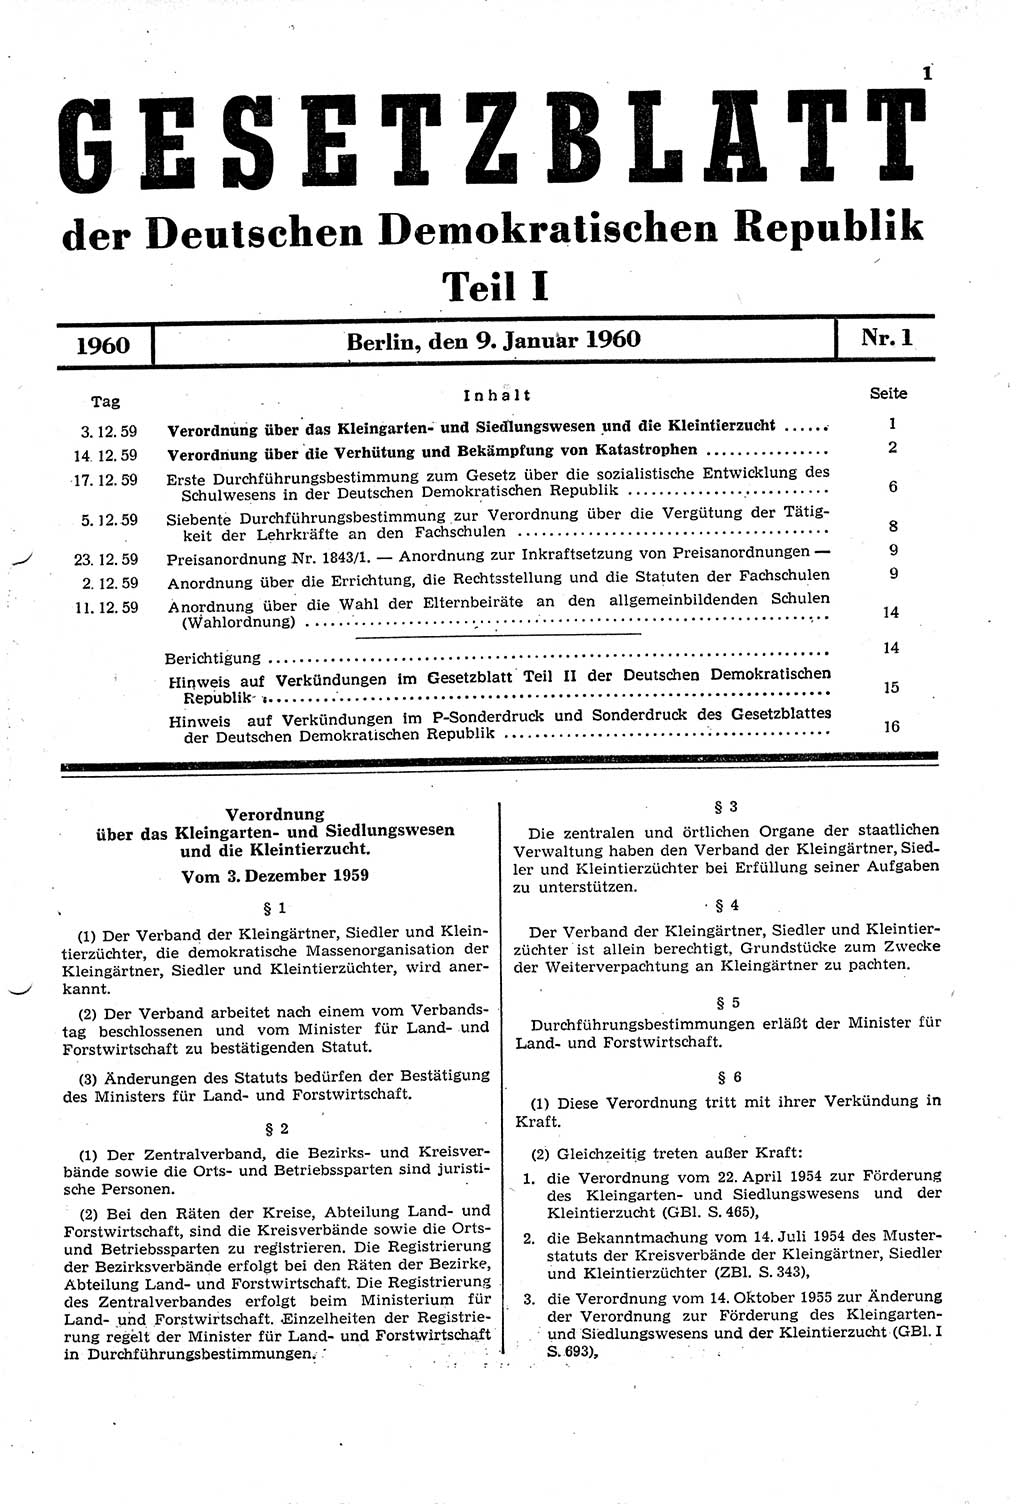 Gesetzblatt (GBl.) der Deutschen Demokratischen Republik (DDR) Teil Ⅰ 1960, Seite 1 (GBl. DDR Ⅰ 1960, S. 1)